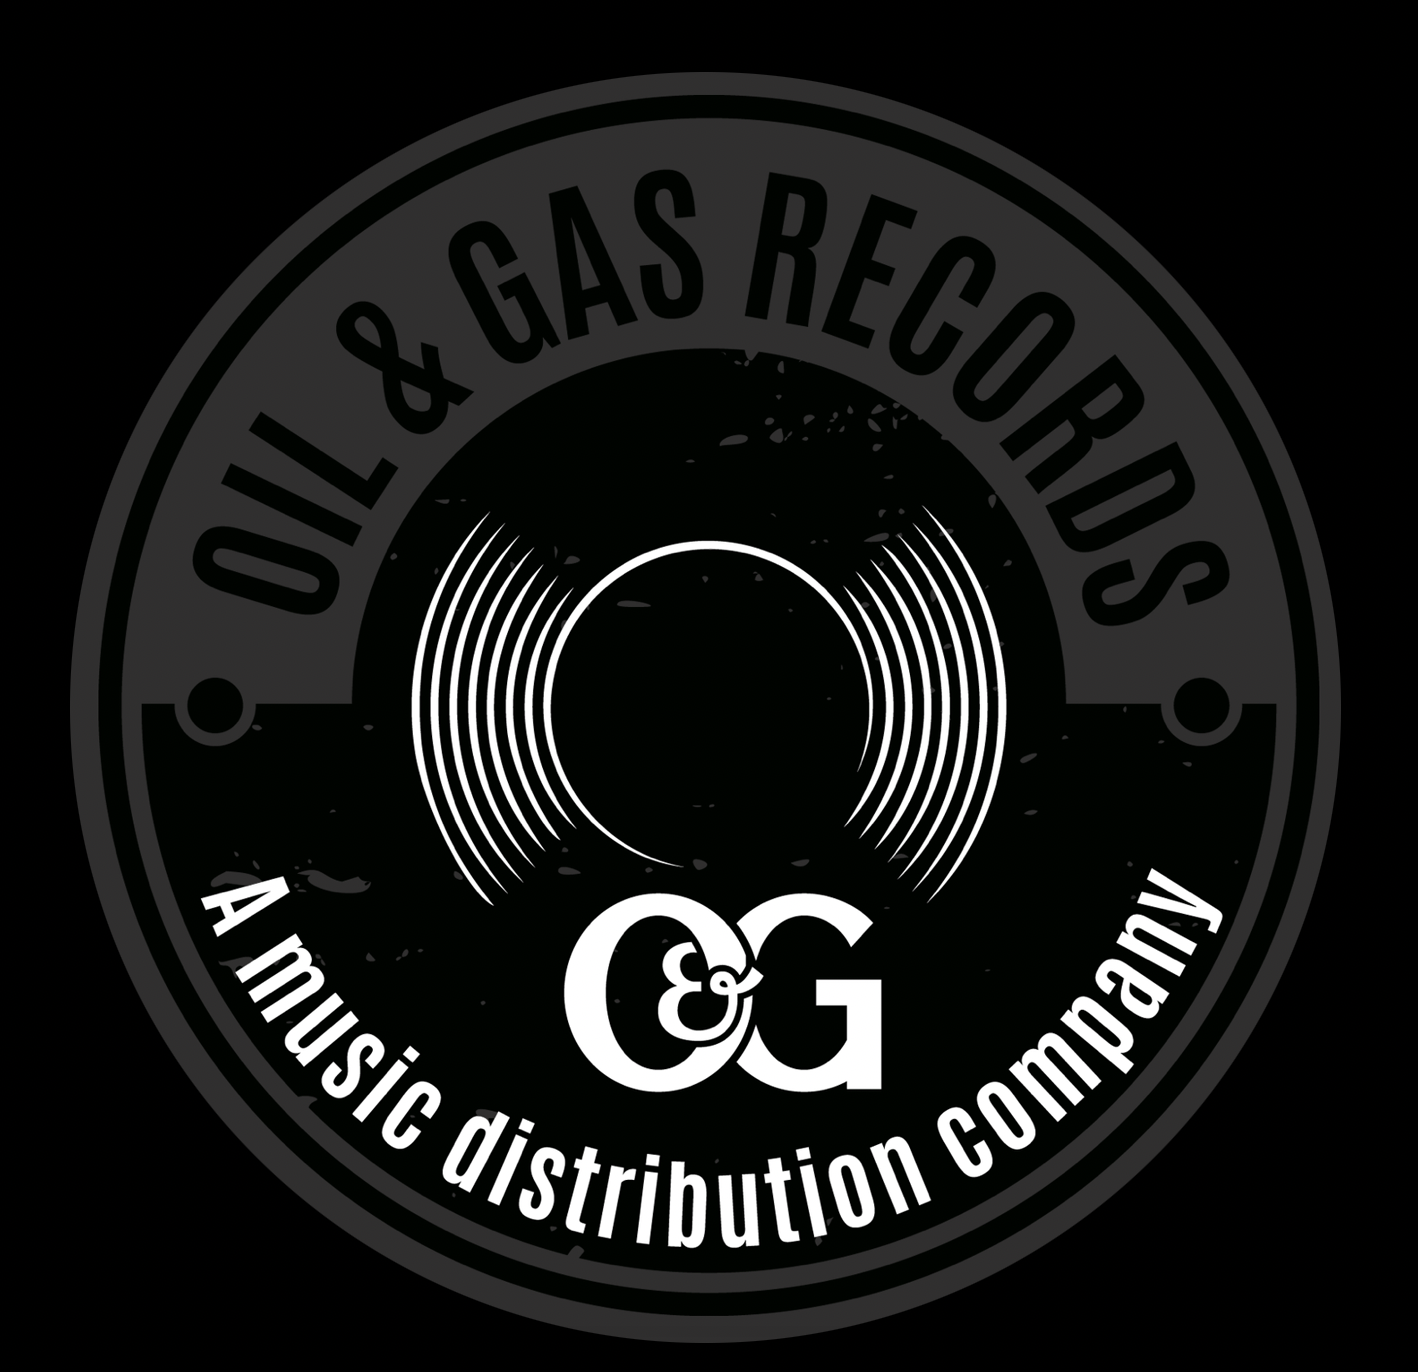 Oil & Gas Records Co.